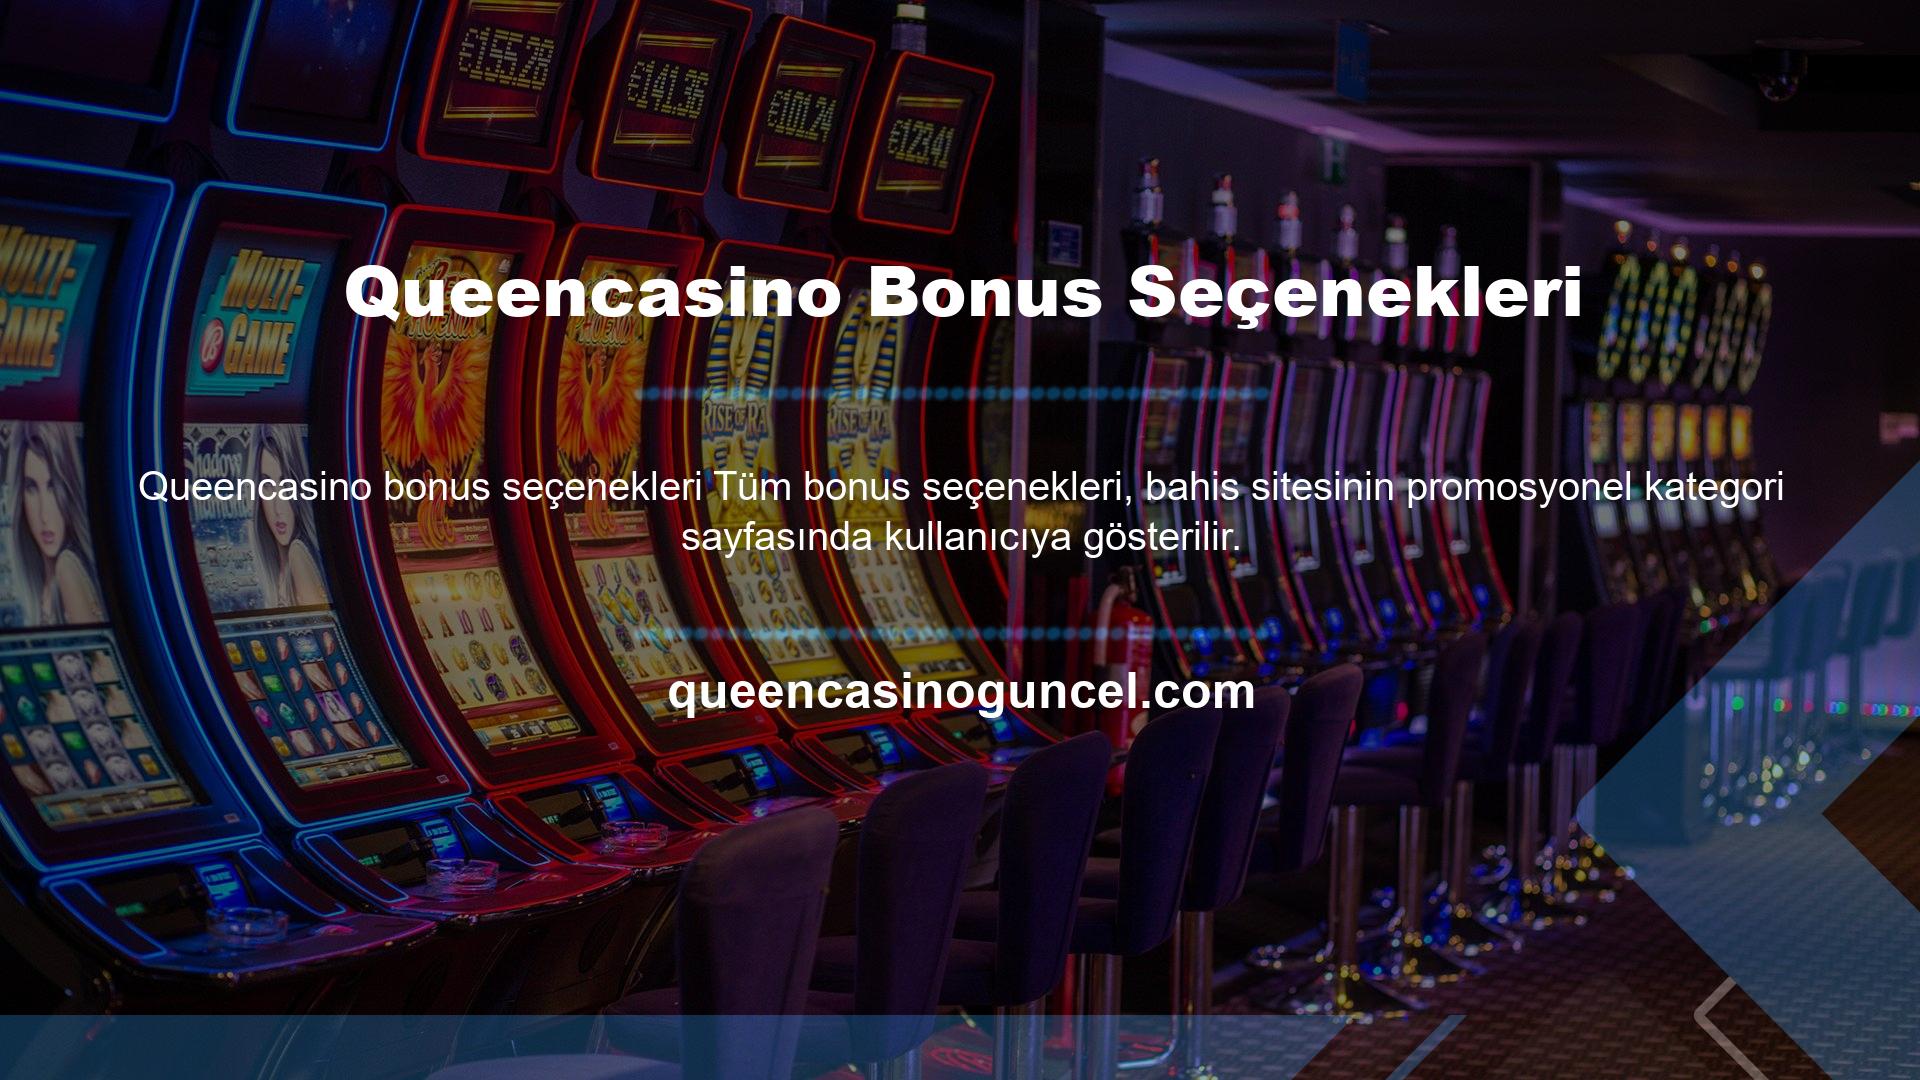 Queencasino Bonus Seçenekleri Bonusu almak için, erişim için mevcut giriş adresi kullanılmalıdır